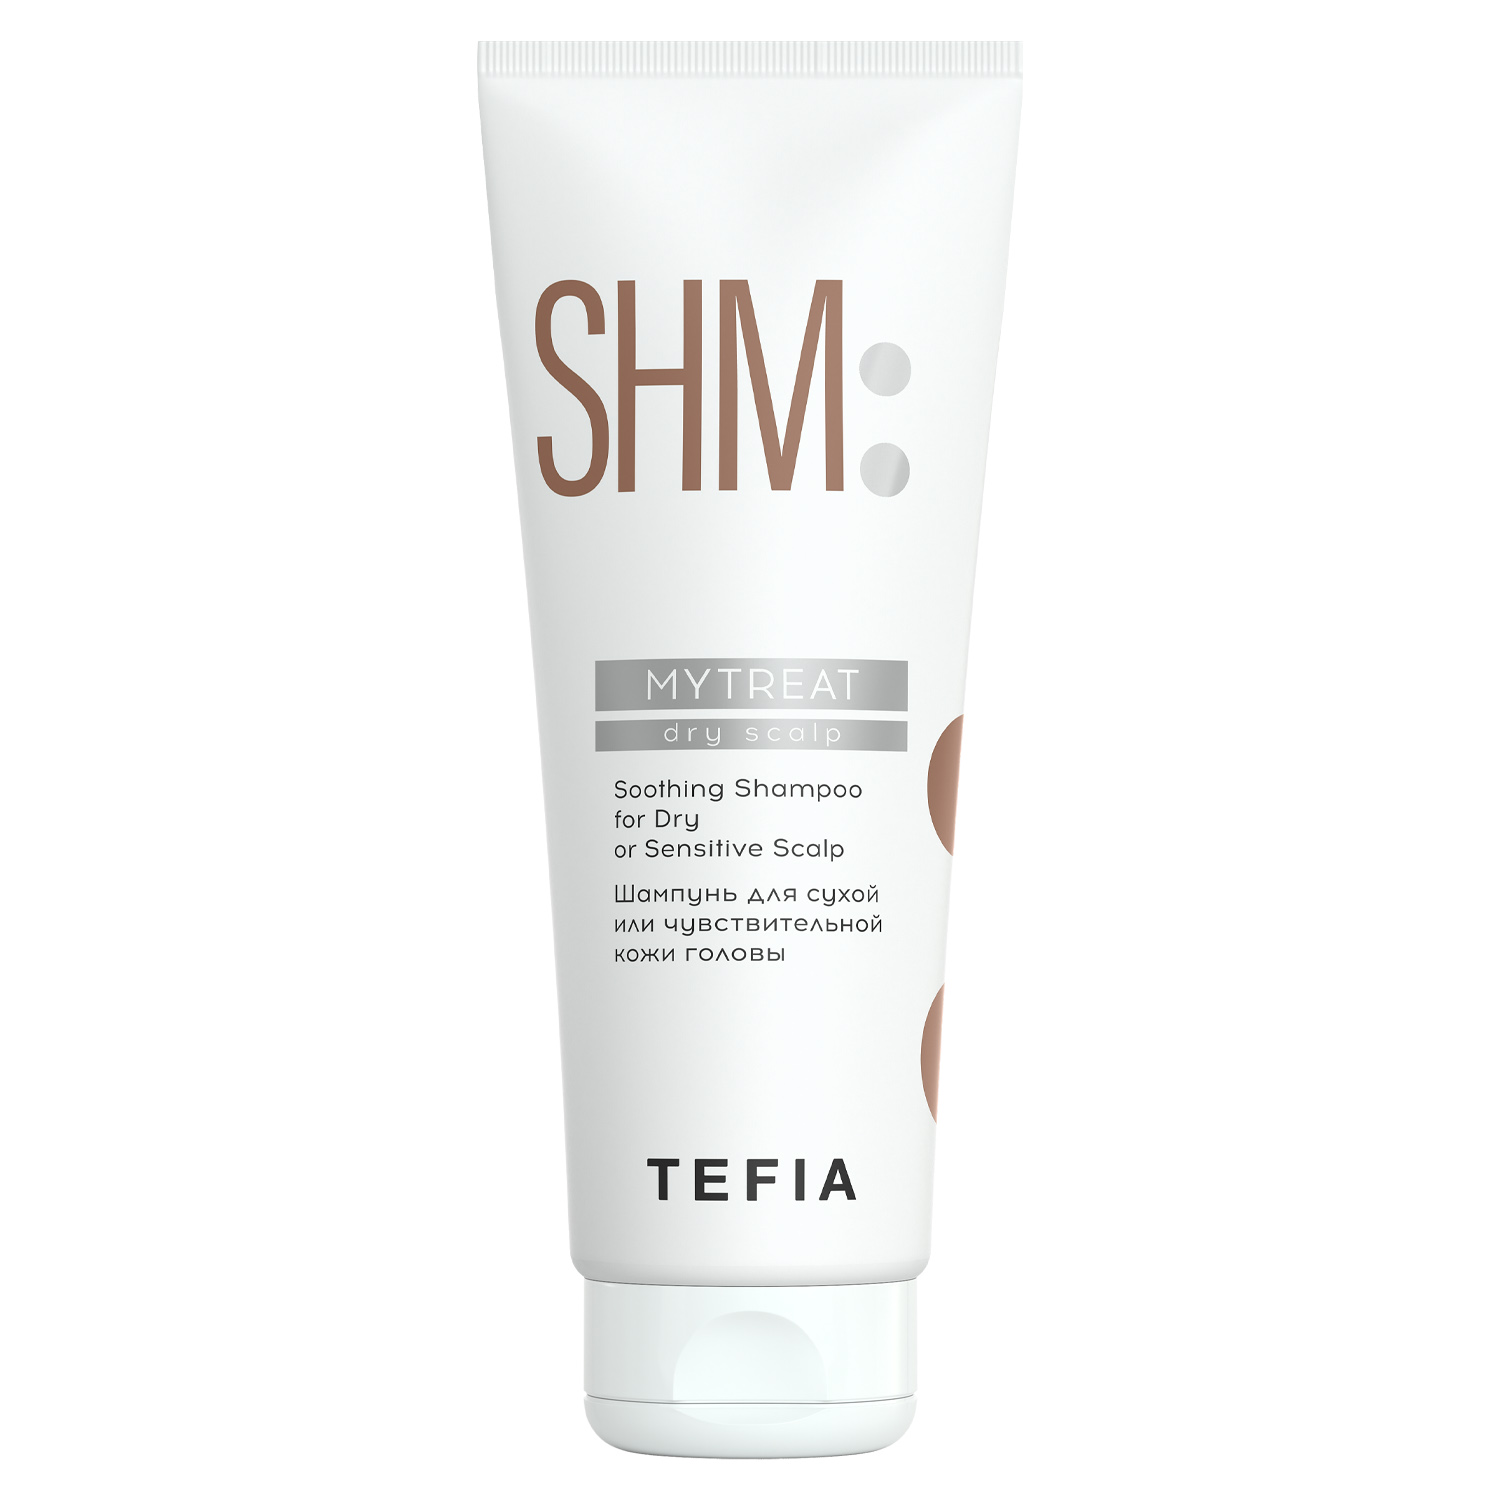 Tefia Шампунь для сухой или чувствительной кожи головы, 250 мл (Tefia, MyTreat)